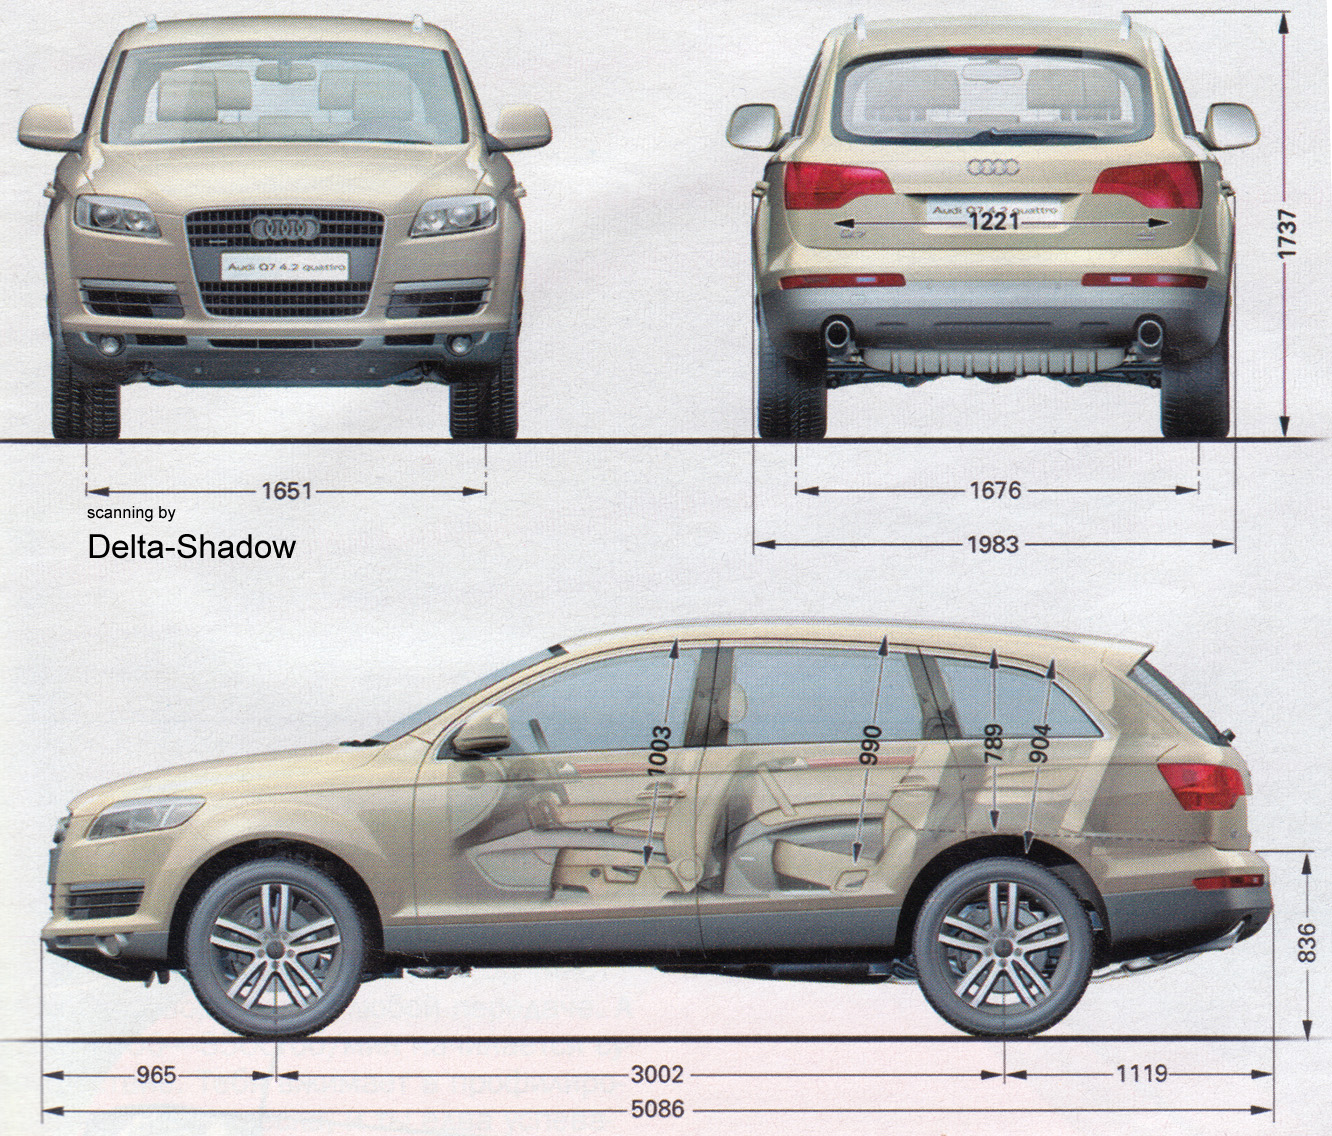 2006 Audi Q7 Suv Blueprints Free Outlines